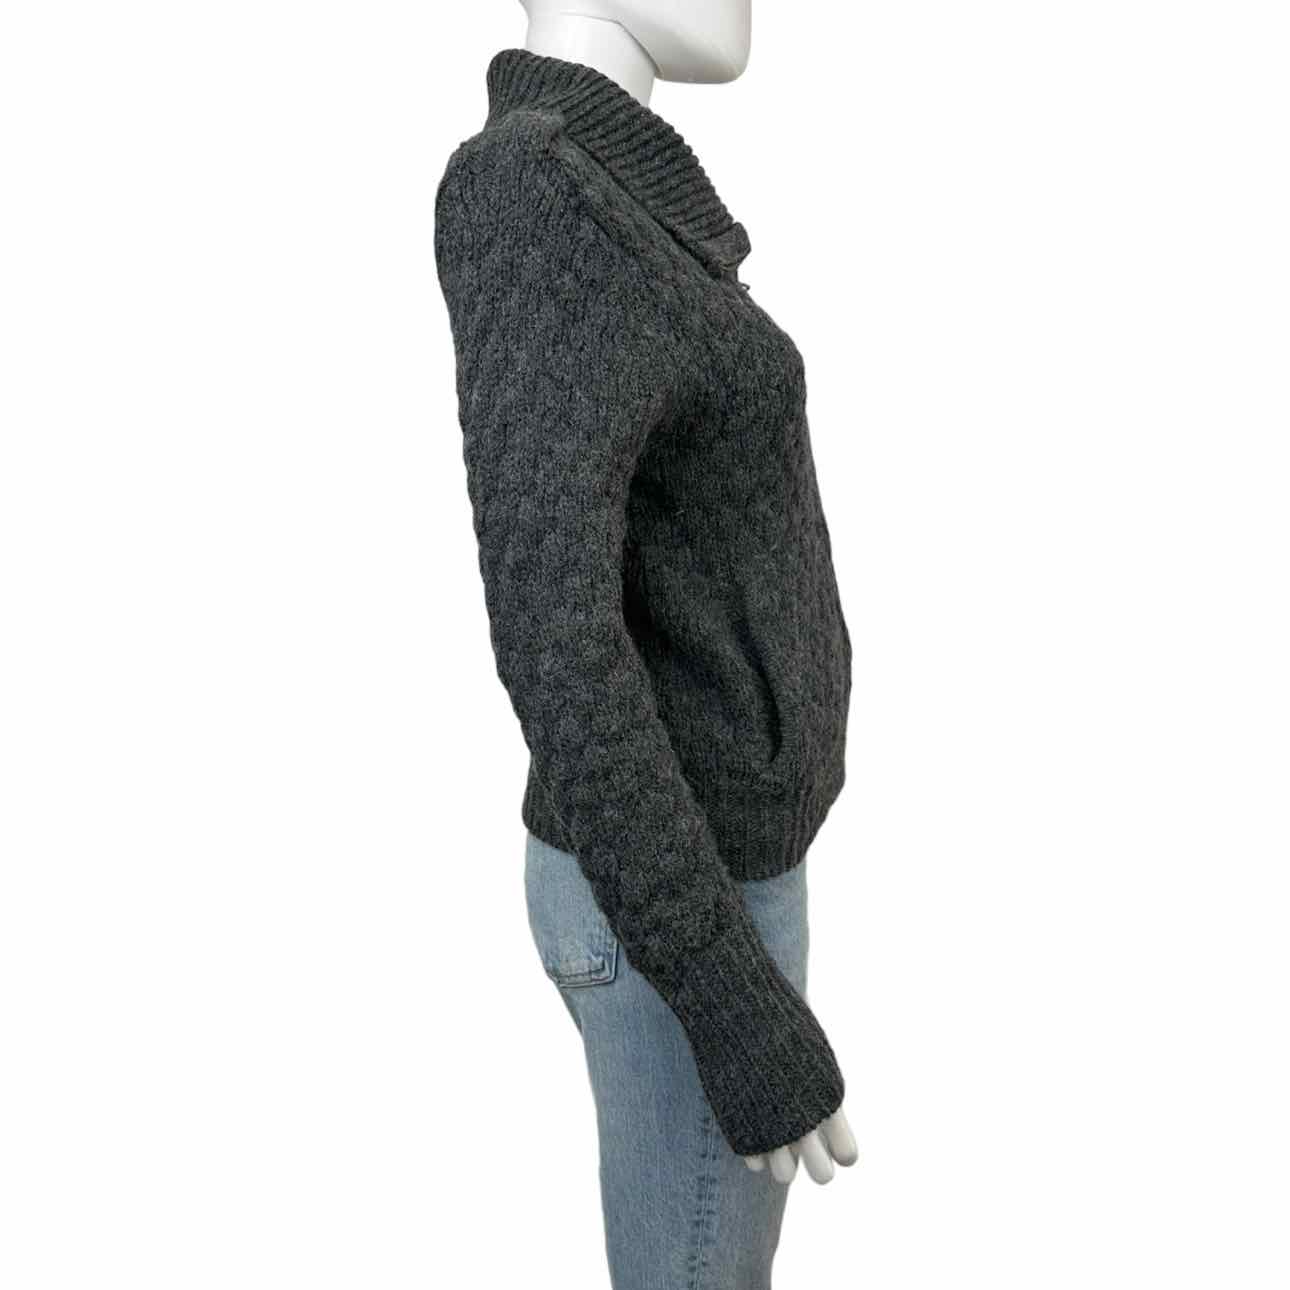 velvet BY GRAHAM & SPENCER Gray Wool Blend Sweater Jacket Size M